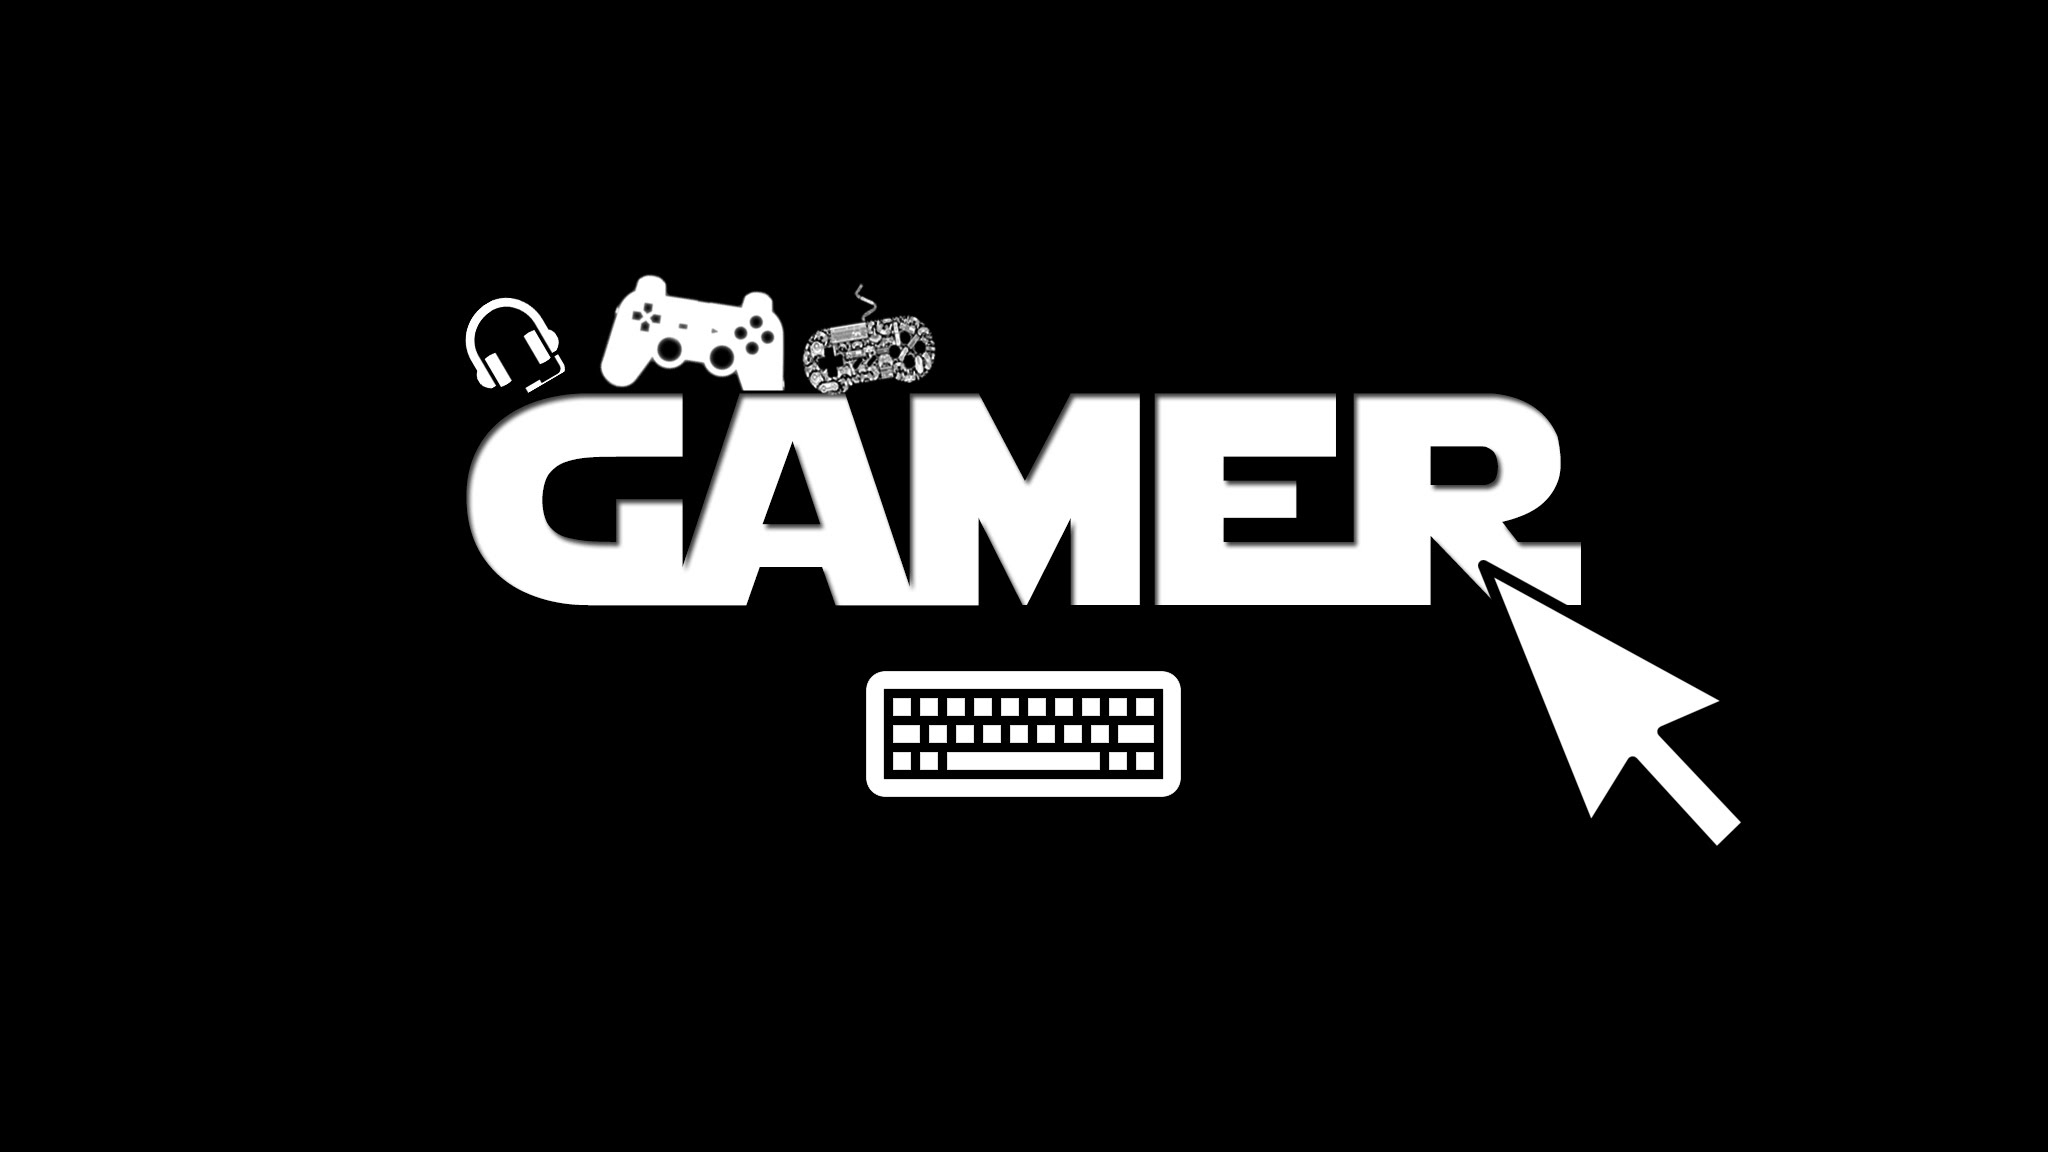 [Columna] Odio, desprecio y rechazo la palabra "gamer"